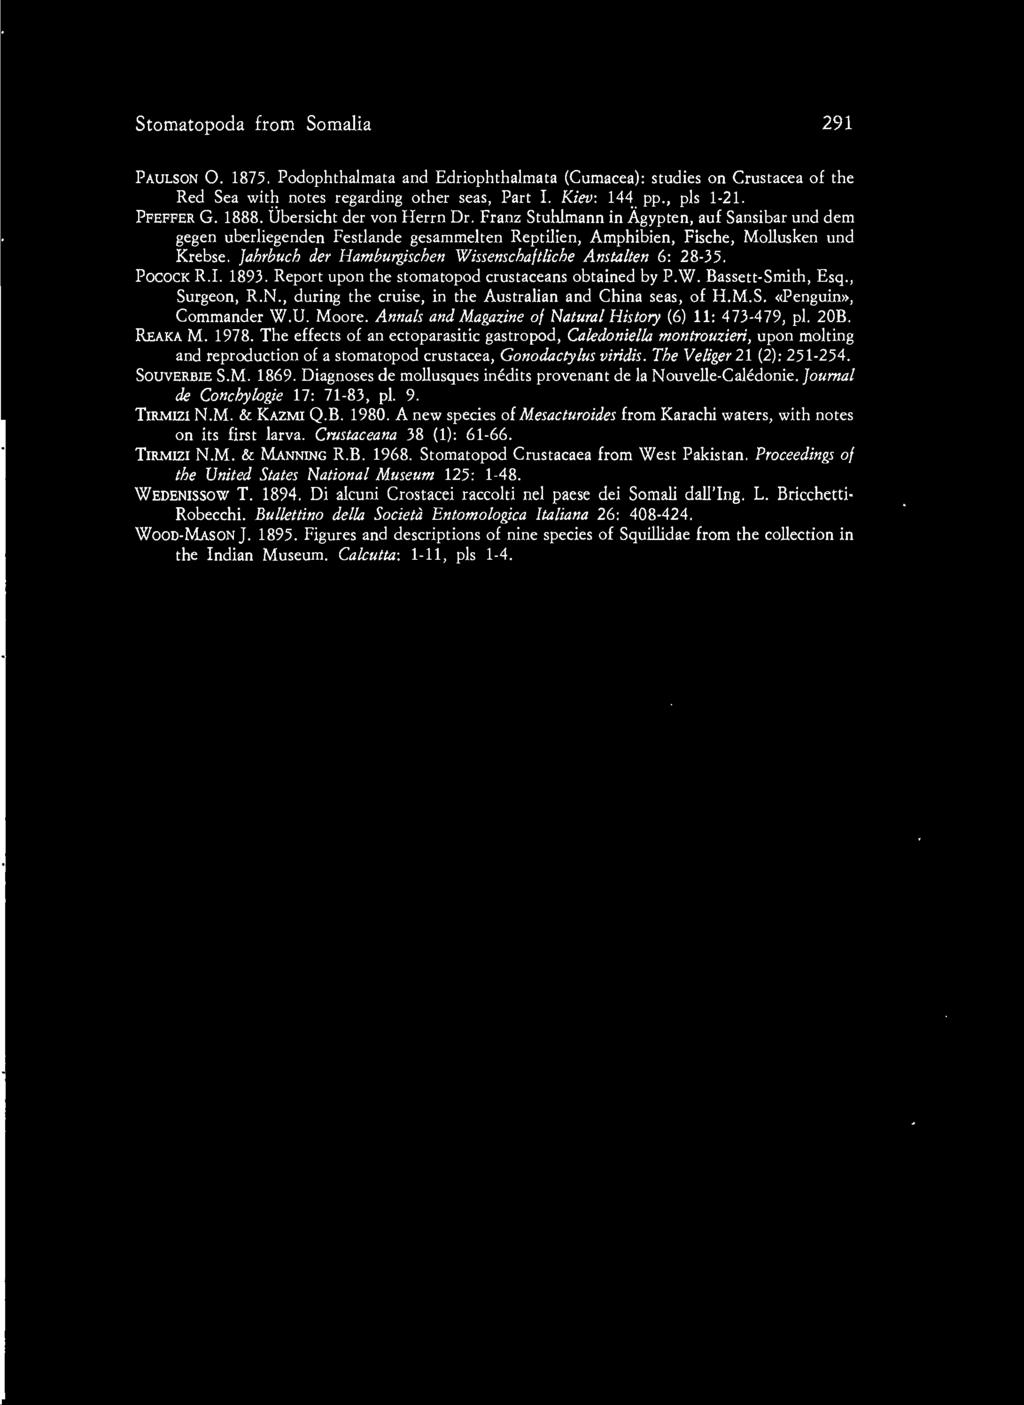 jahrbuch der Hamburgischen Wissenschaftliche Anstalten 6: 28-35. POCOCK R.I. 1893. Report upon the stomatopod crustaceans obtained by P.W. Bassett-Smith, Esq., Surgeon, R.N.